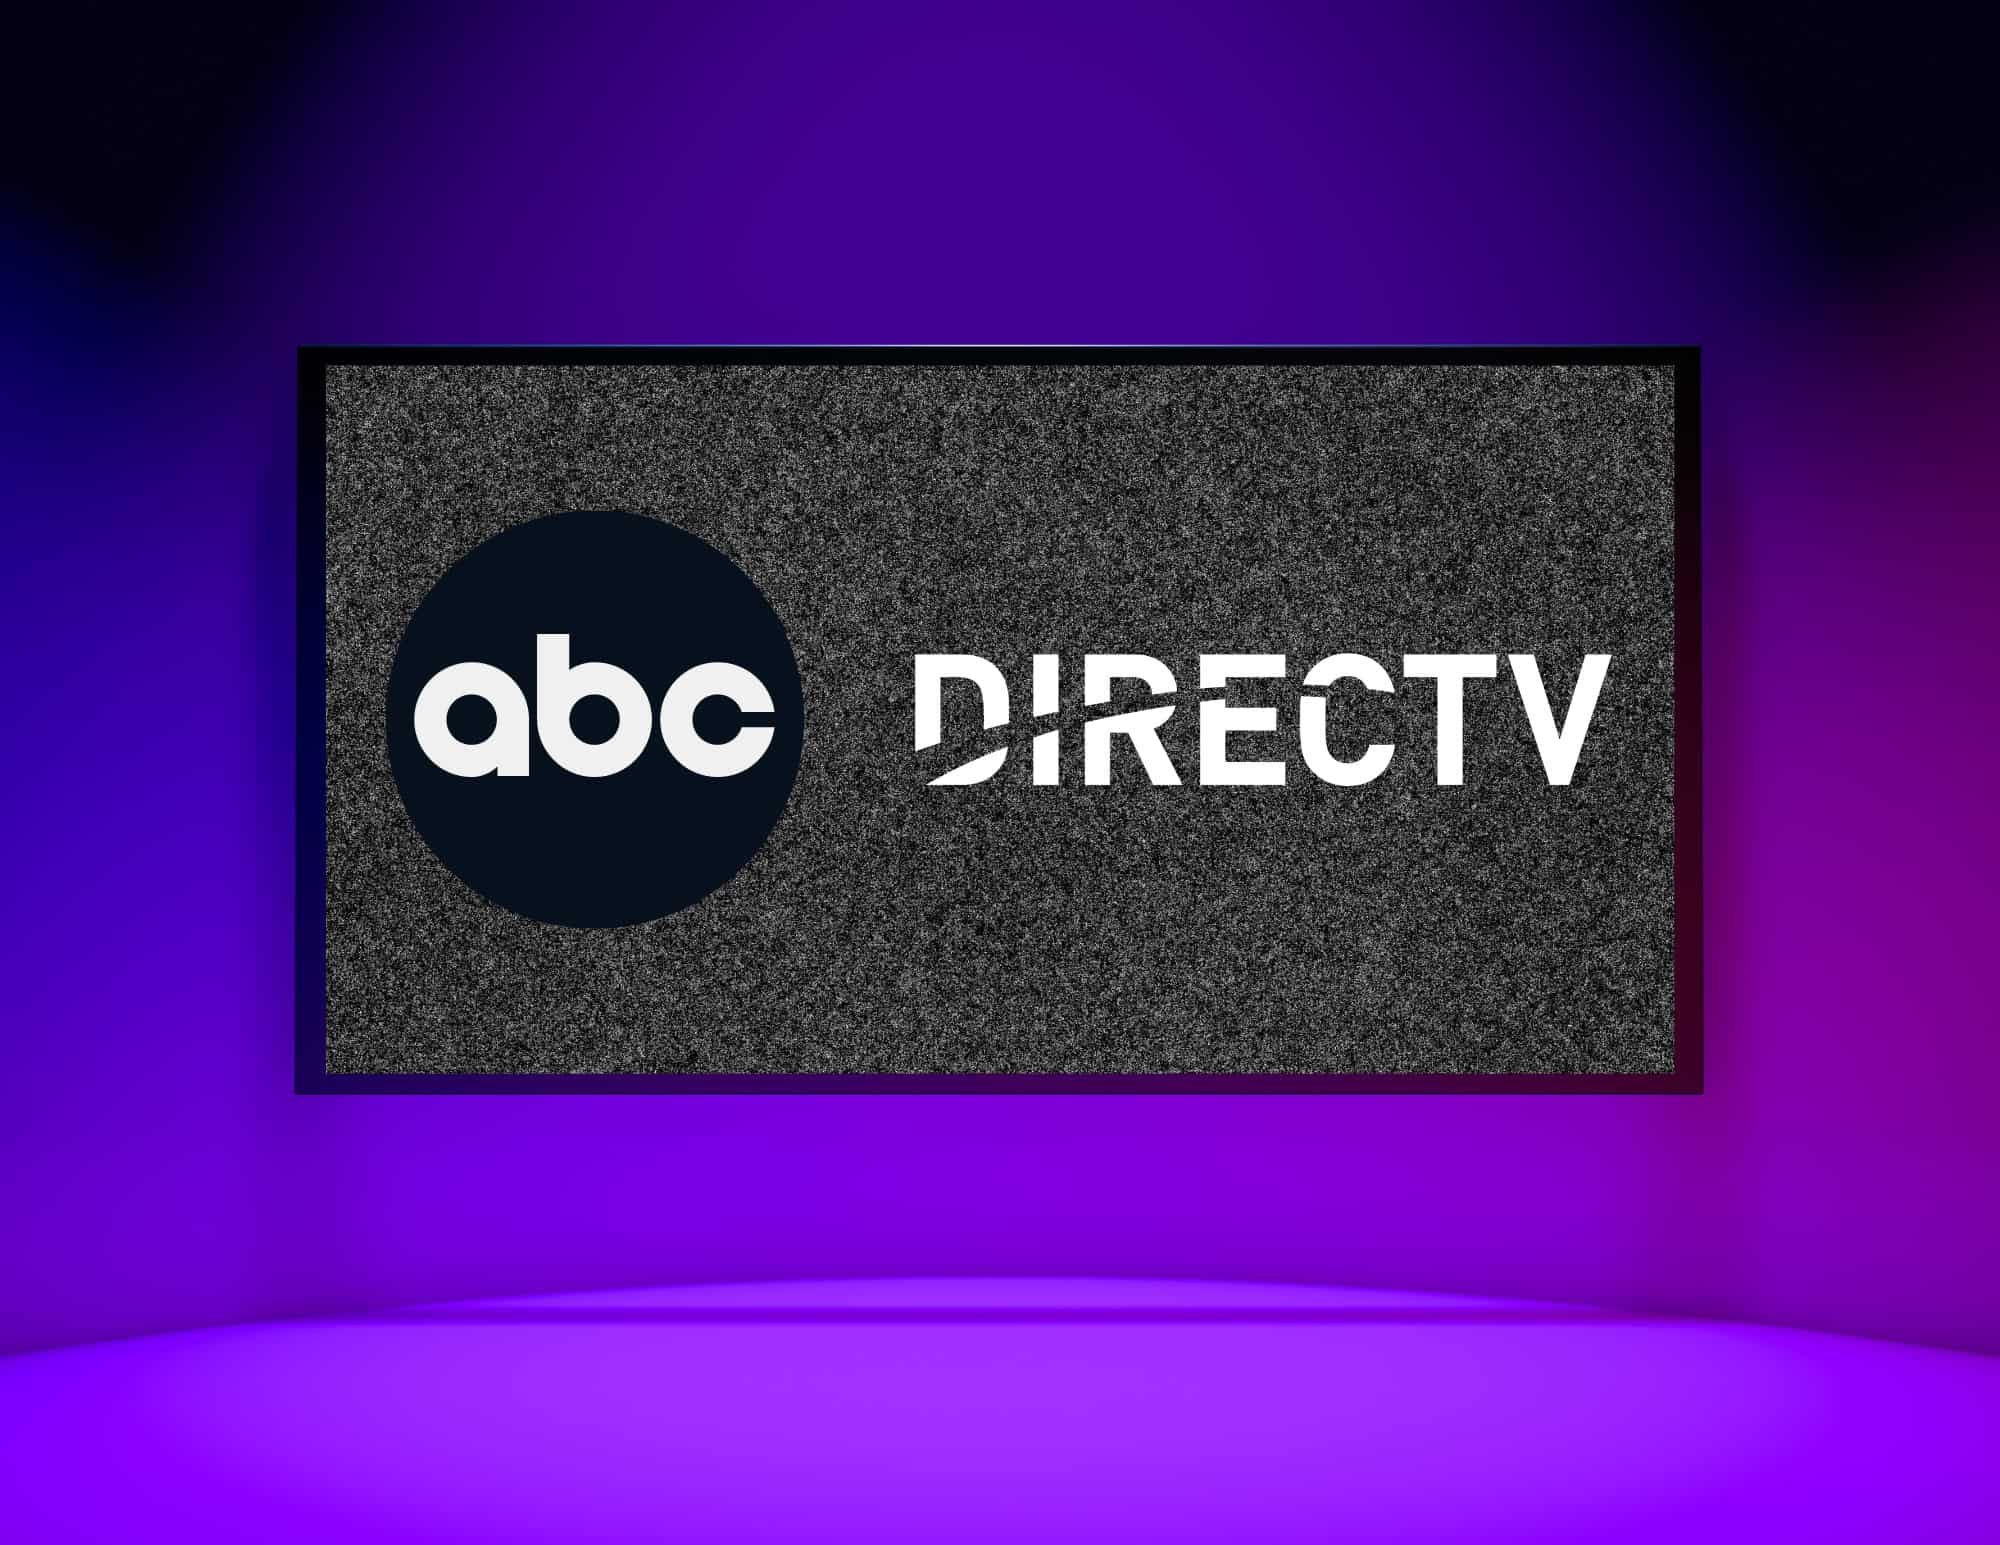 ABC logo next to DirecTV logo on TV.